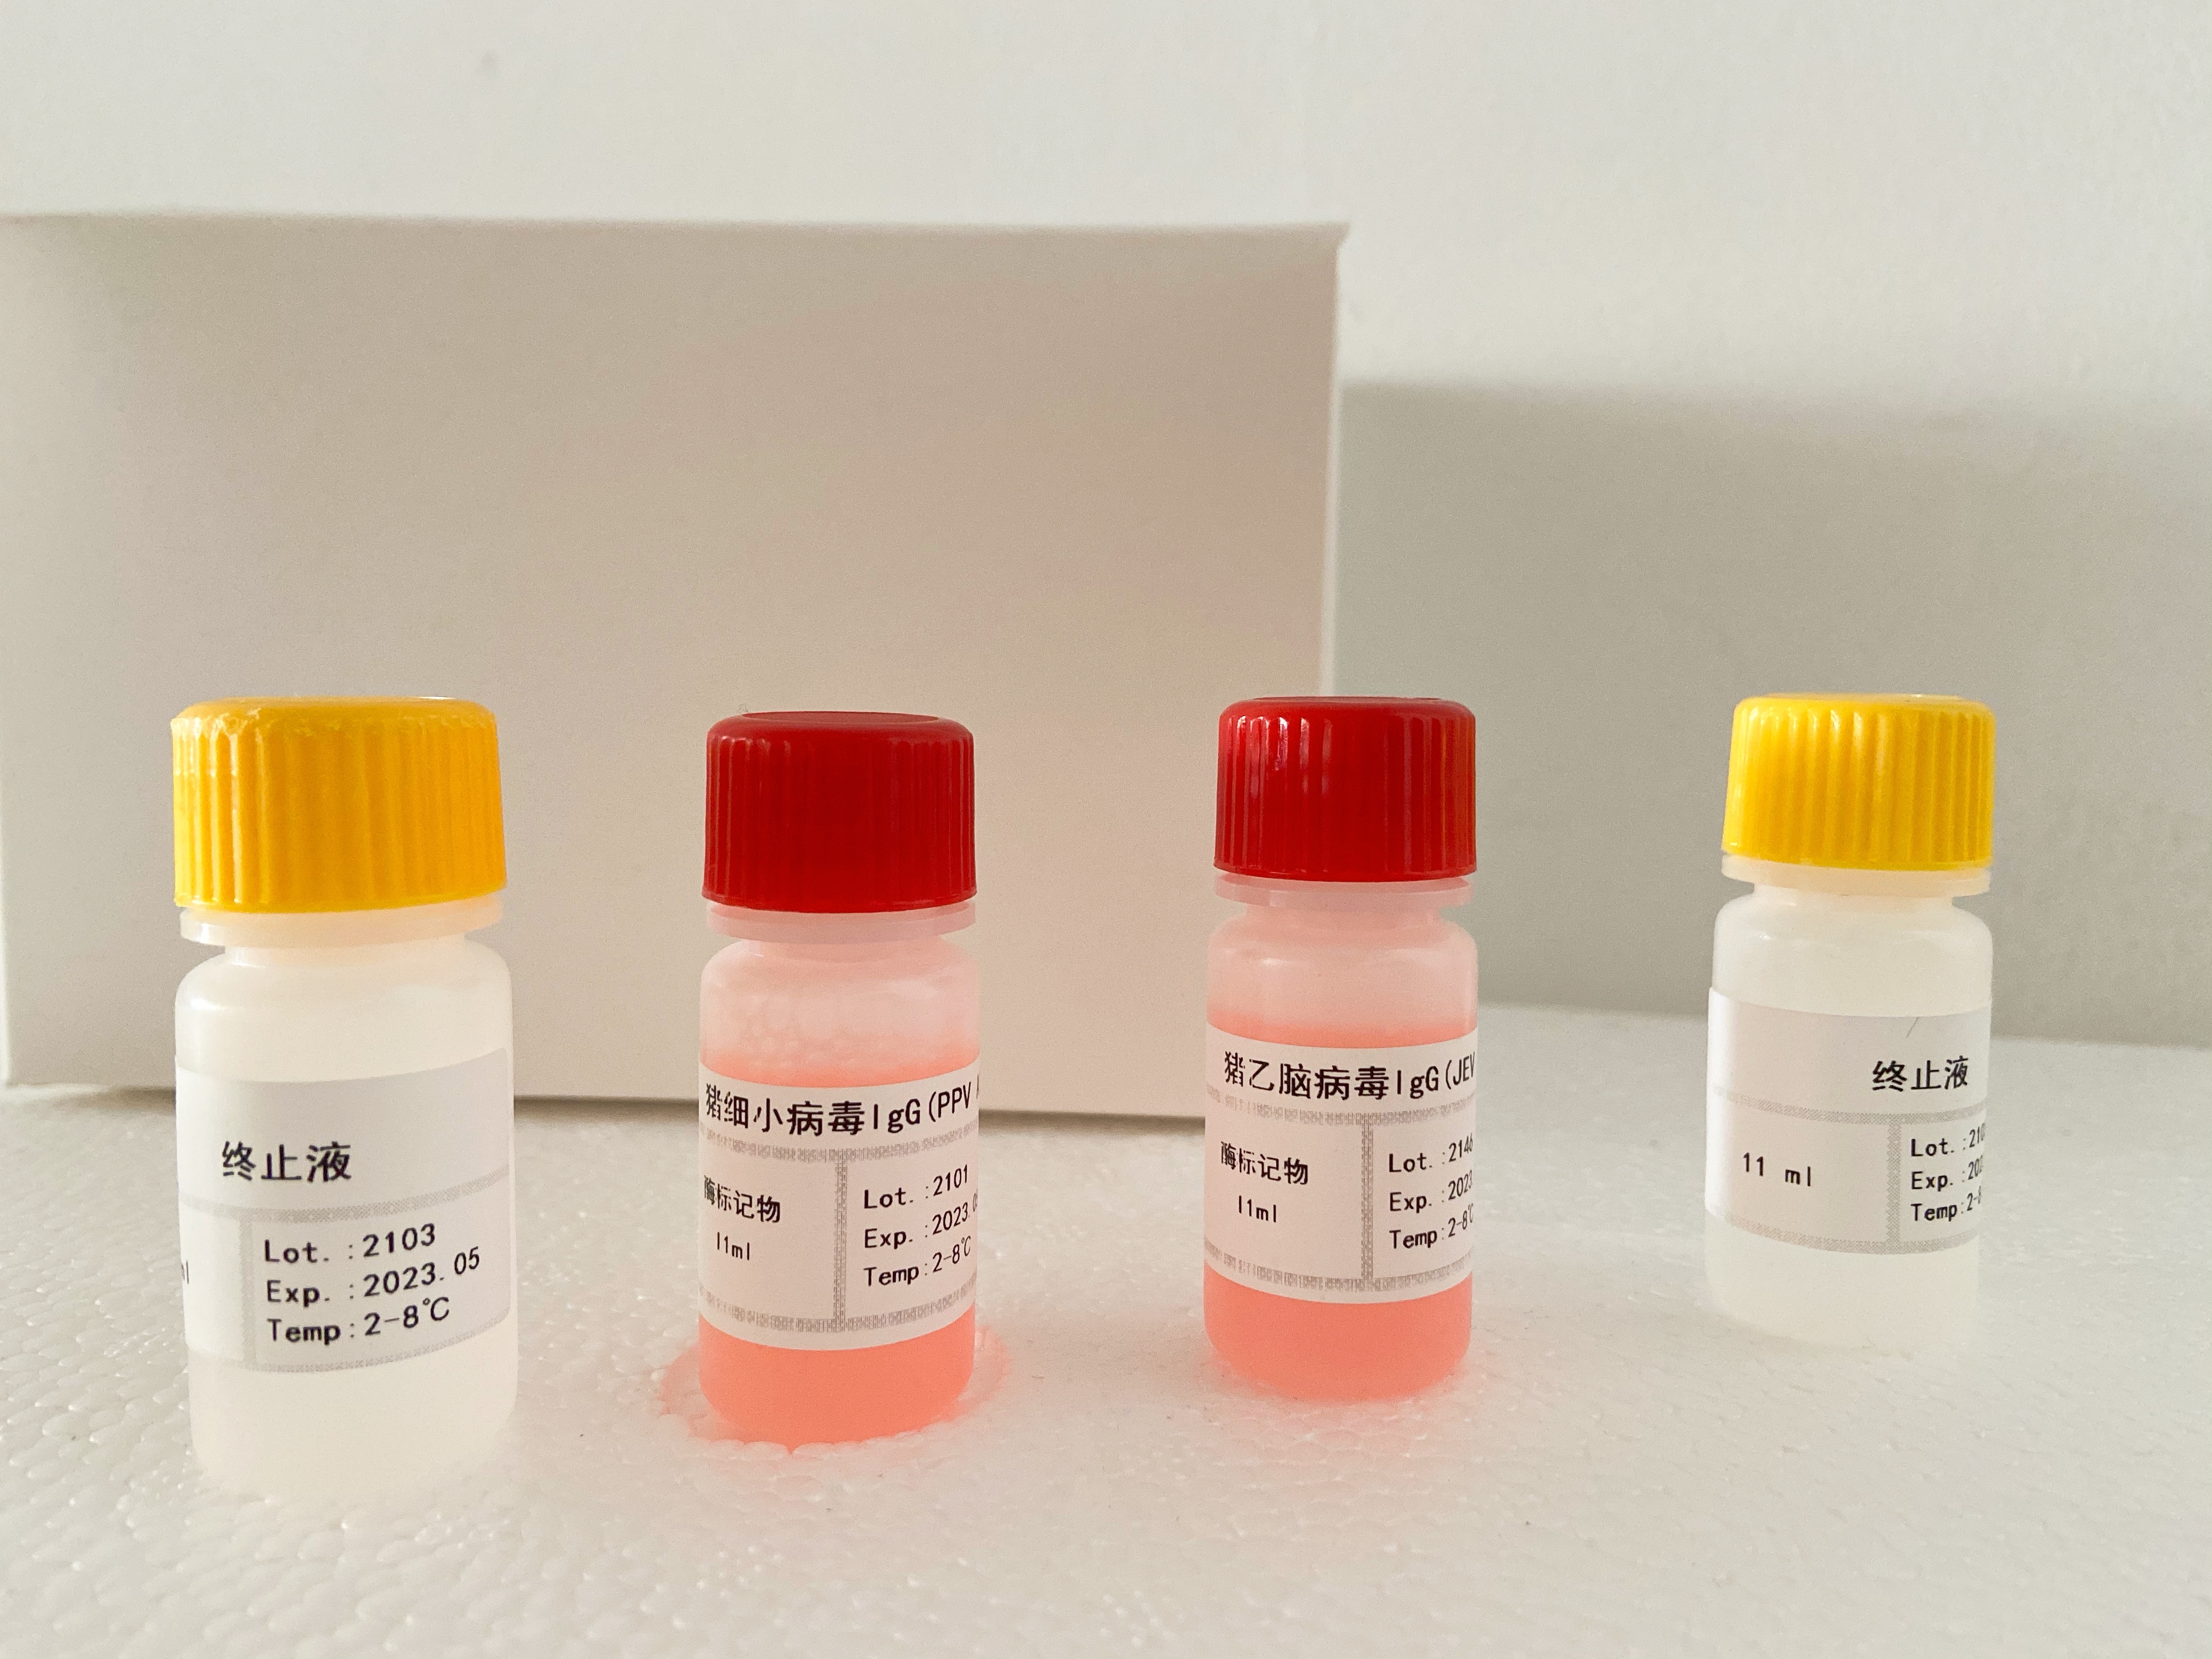 小鼠孤腓肽(OFQ/N)检测试剂盒